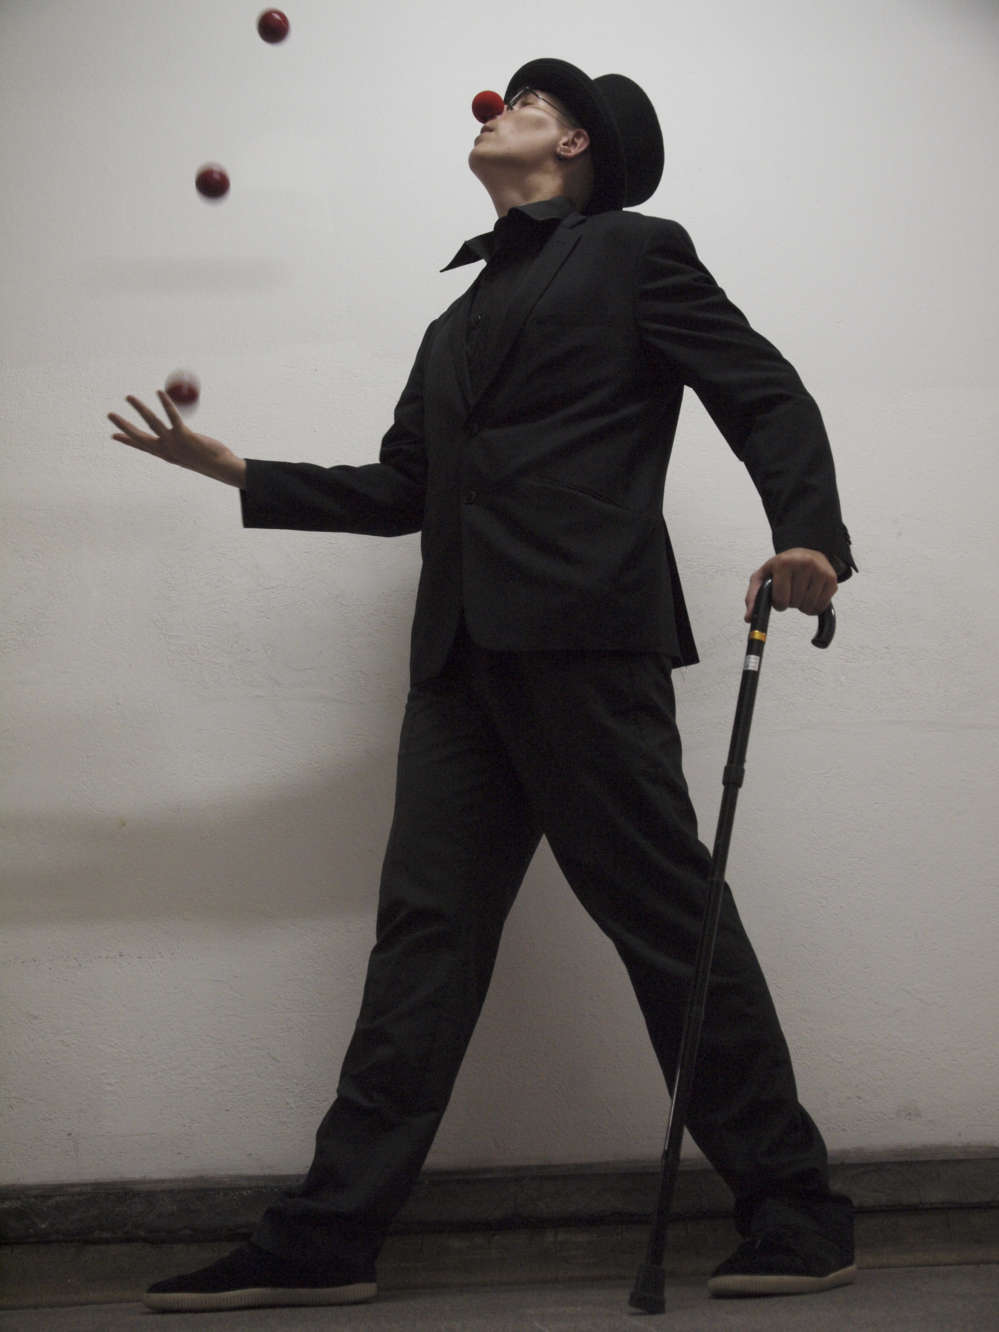 jongleur, clown, spectacle de jonglage, jonglerie, spectacle humoristique,